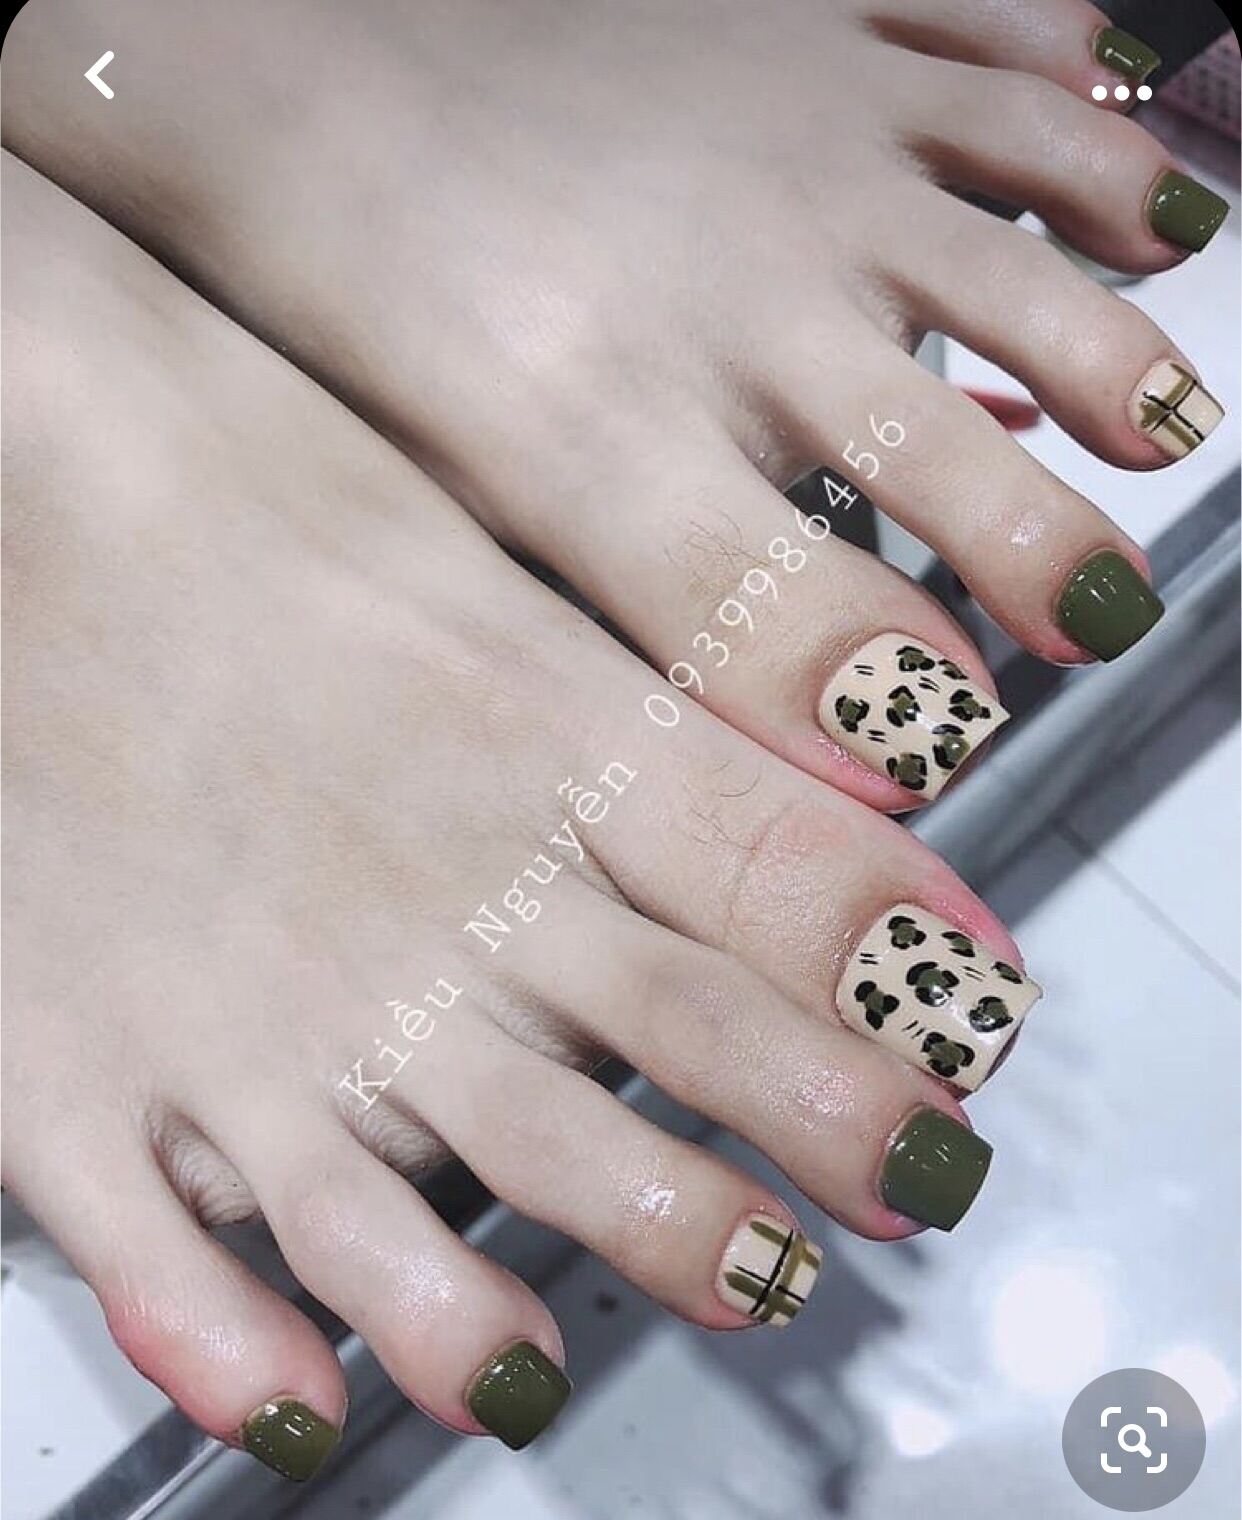 Những mẫu nail chân đẹp thể hiện theo phong cách riêng  Blog Tiệm Nail